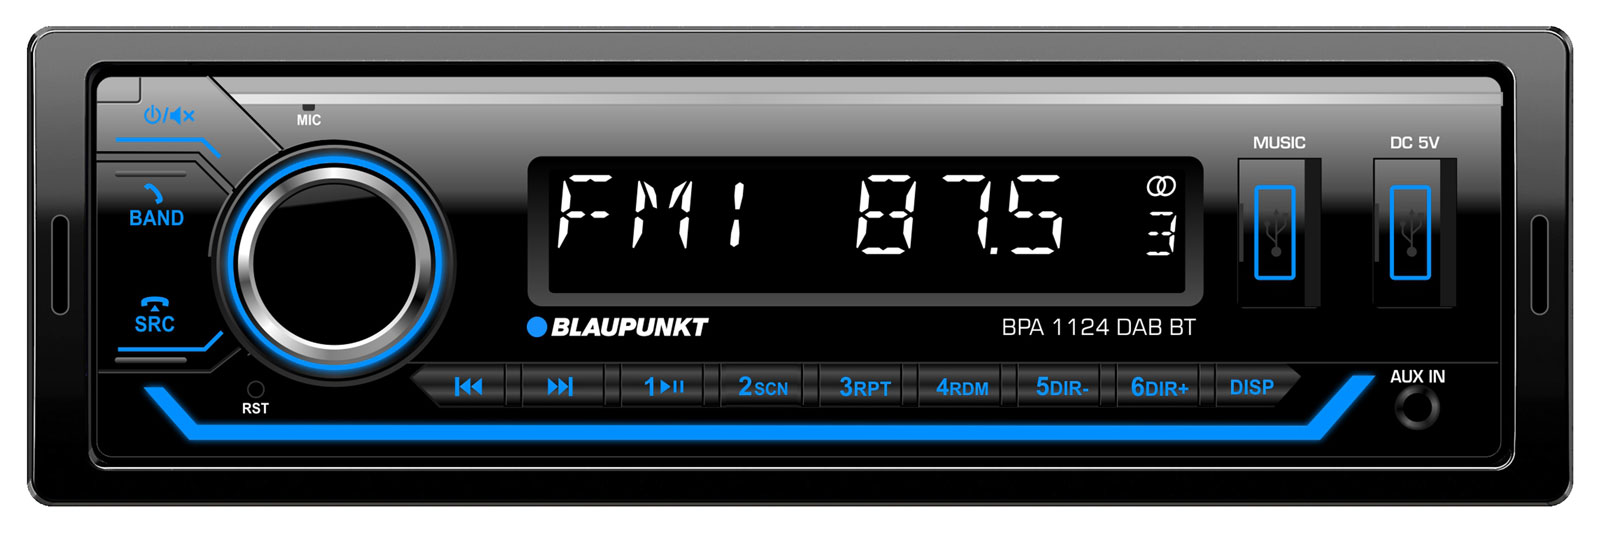 Blaupunkt USB AUX Bluetooth MP3 Autoradio für Isuzu D-Max (2012-2020)